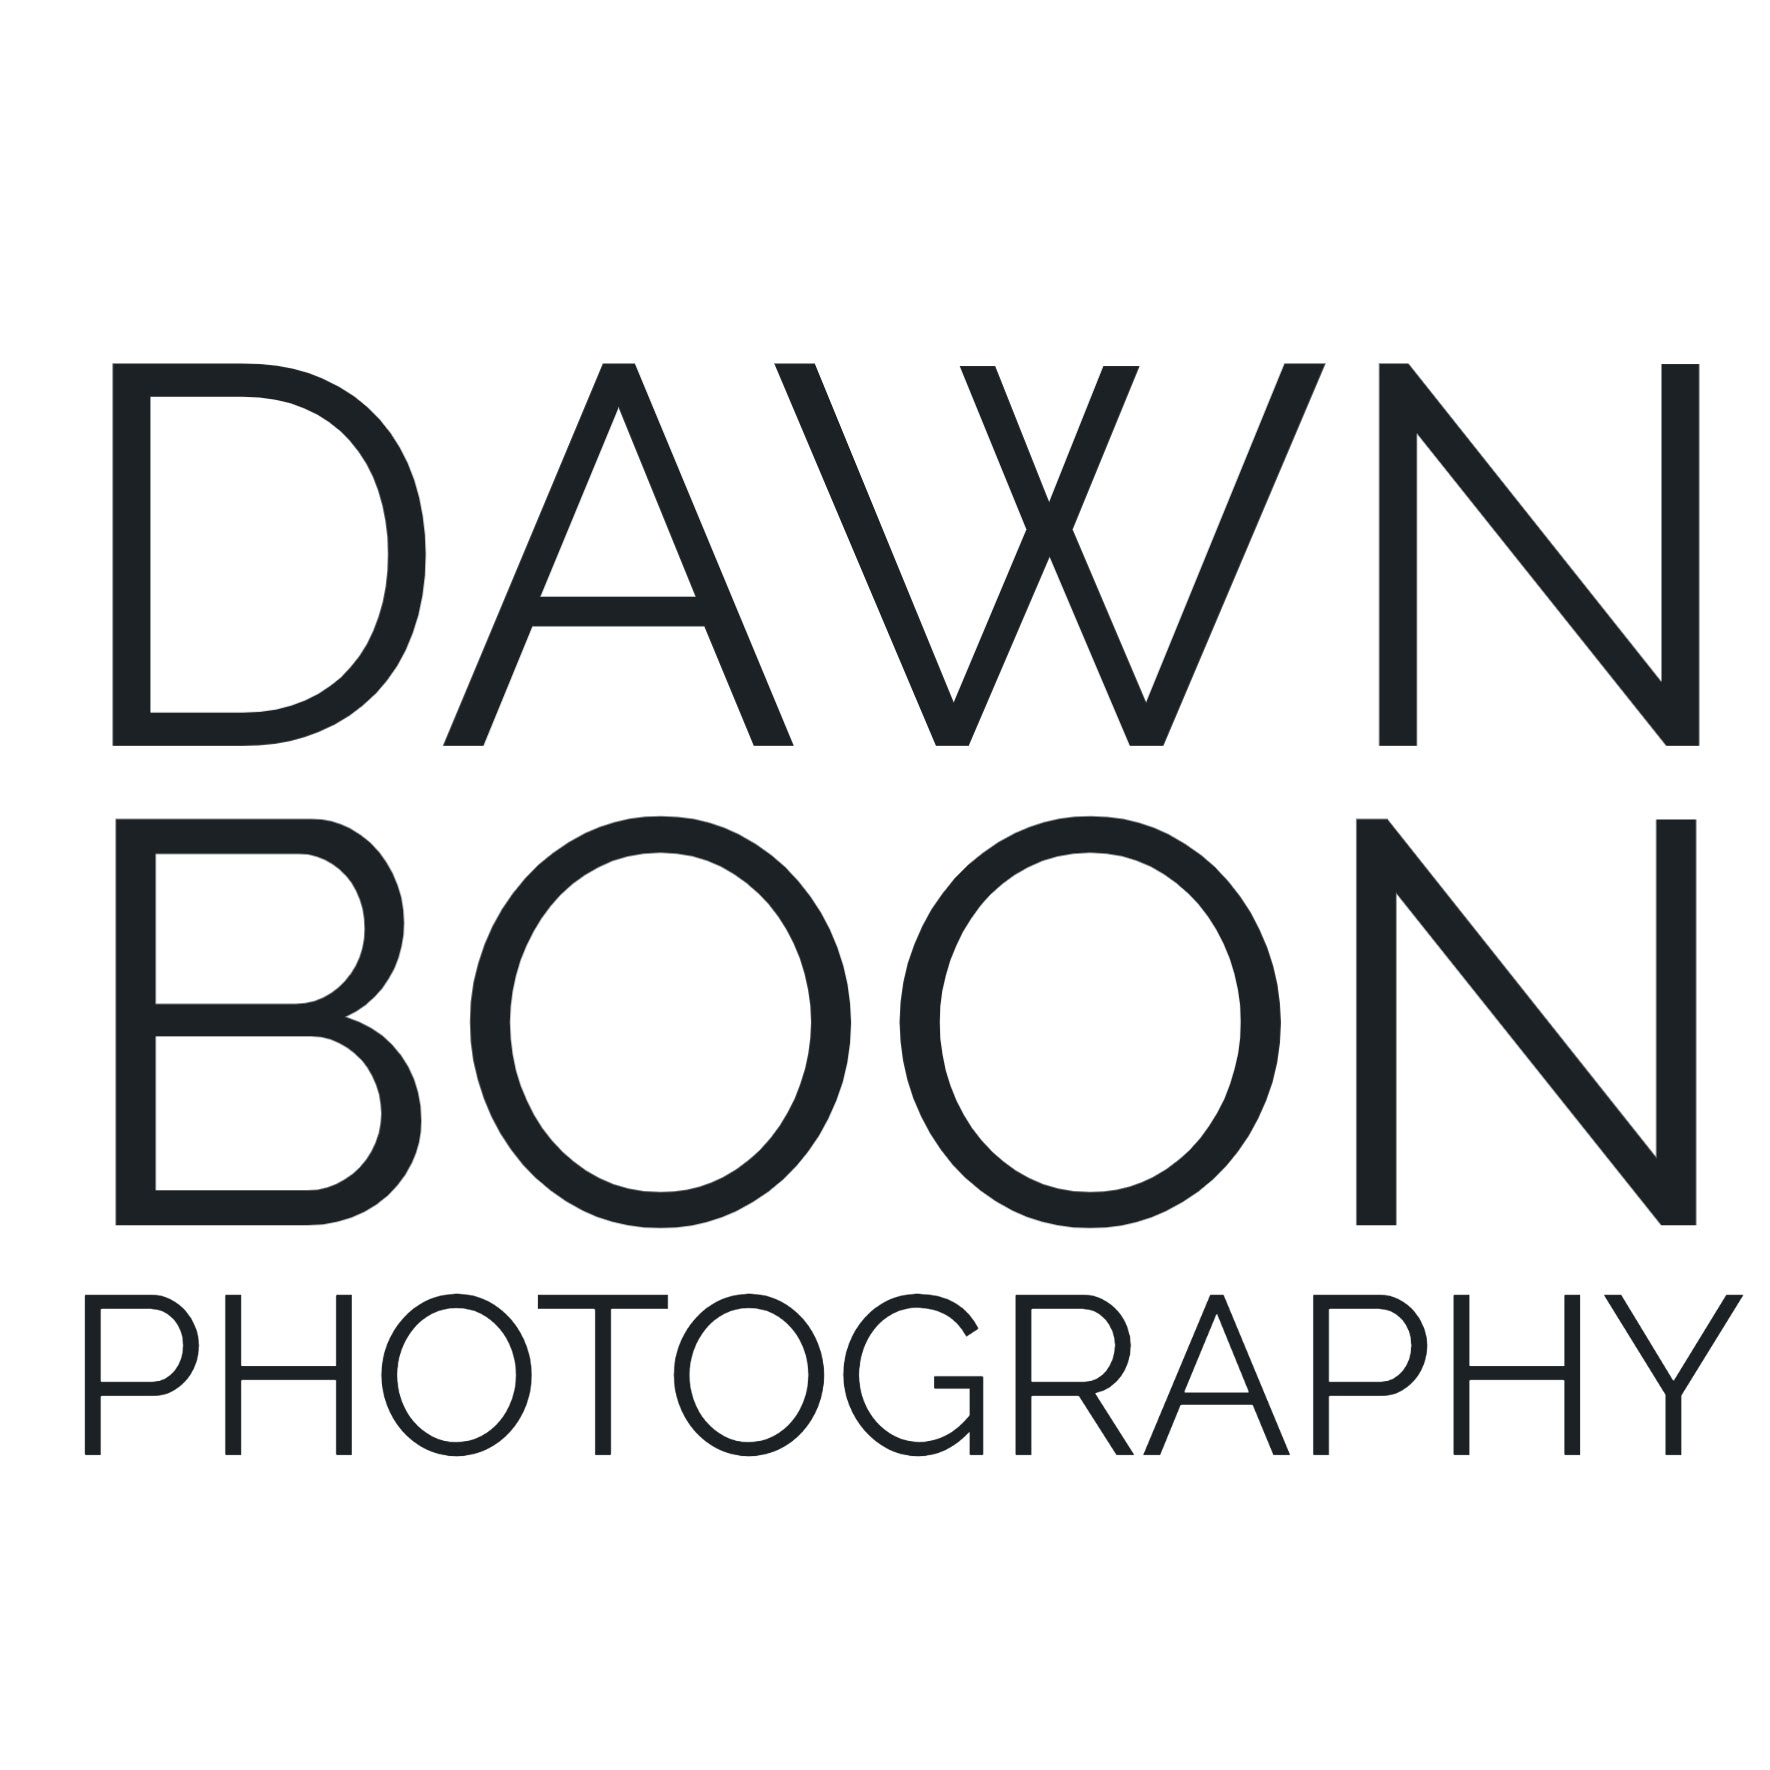 Dawn Boon